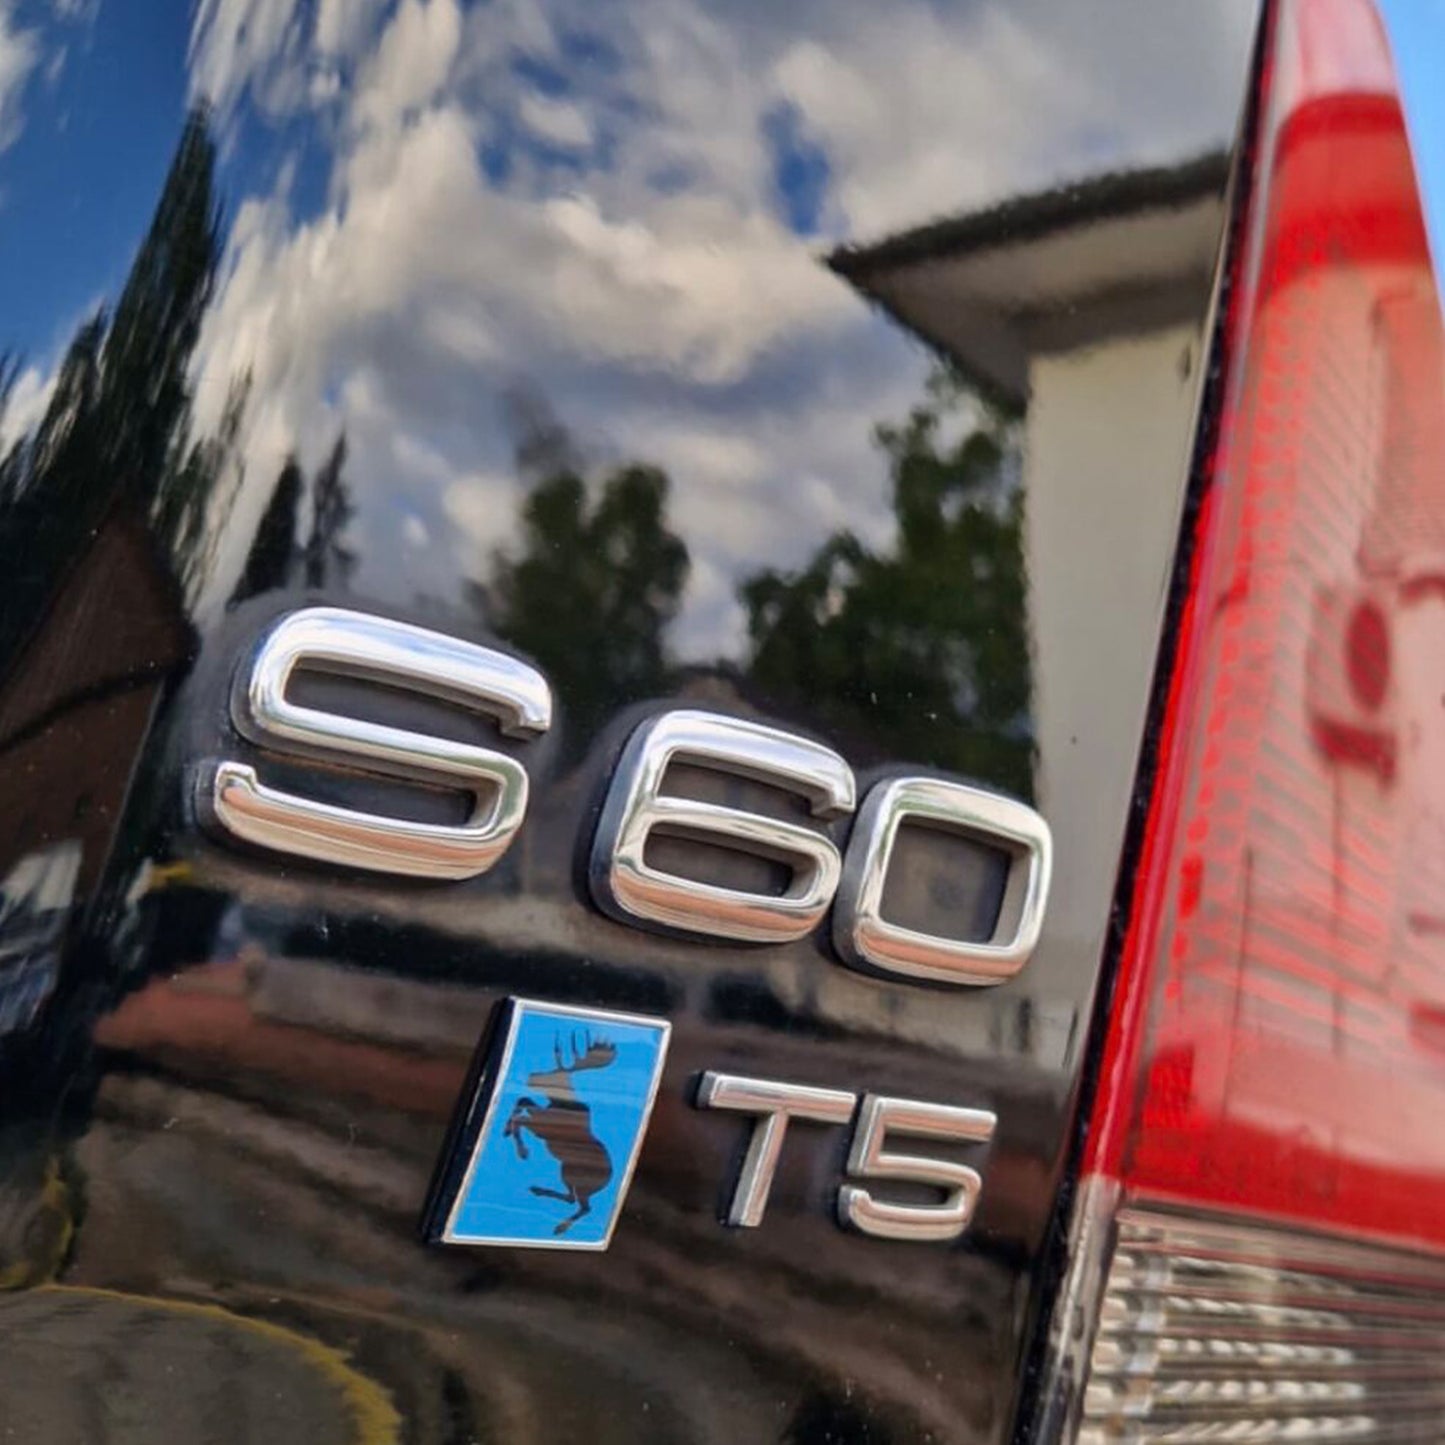 Volvo 1” Genuine Prancing Moose Hard Chrome Badge Slash Emblem in Rebel Blue